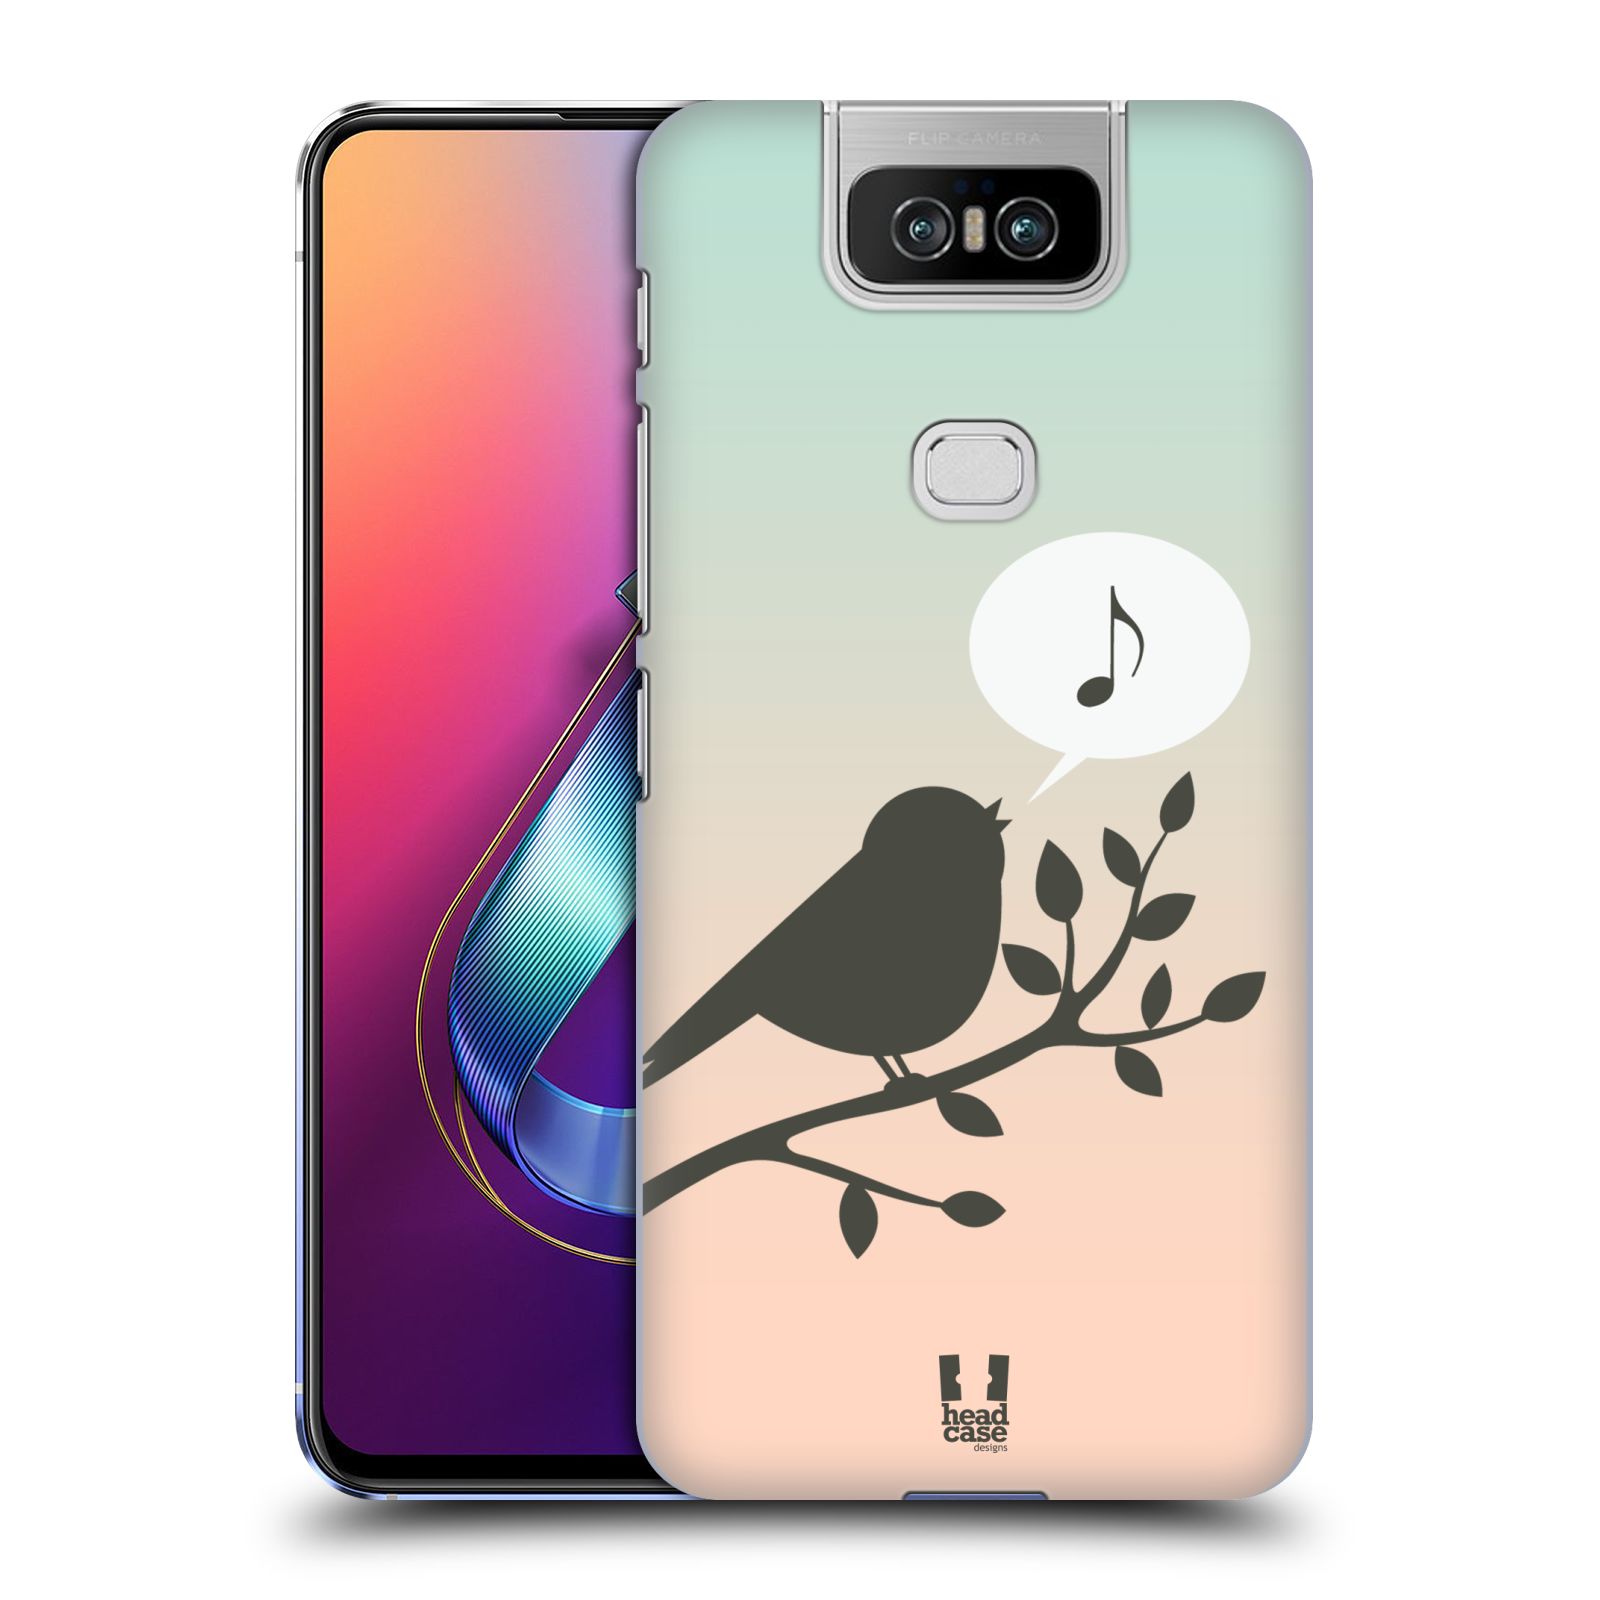 Pouzdro na mobil Asus Zenfone 6 ZS630KL - HEAD CASE - vzor Ptáček zpěváček noty píseň